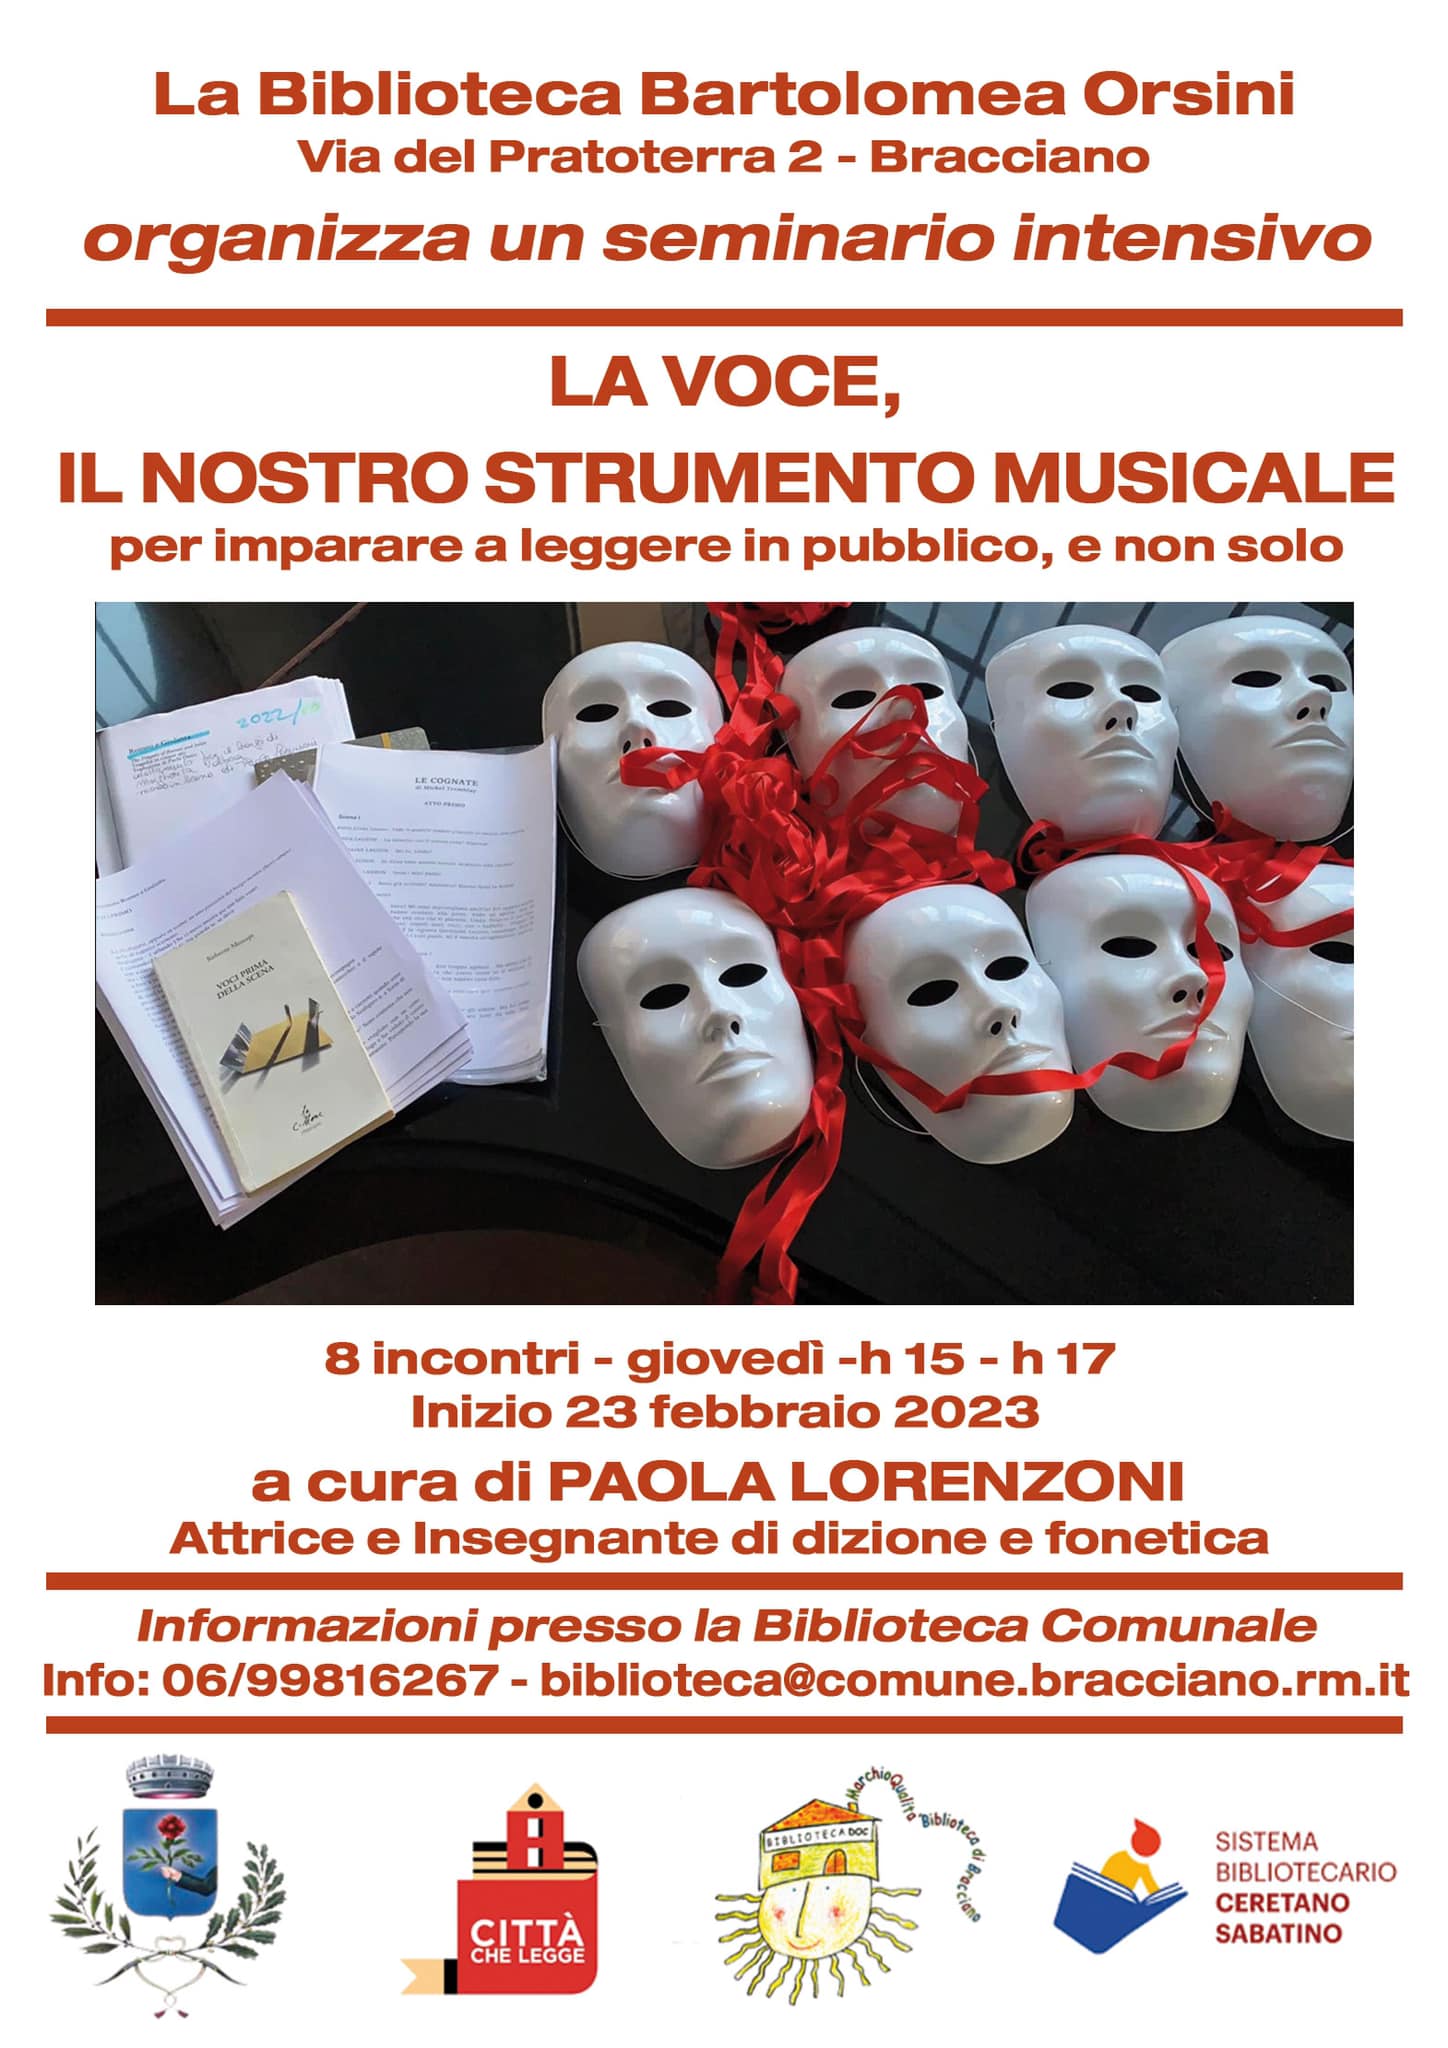 La Biblioteca Bartolomea Orsini presenta: la voce, il nostro strumento musicale